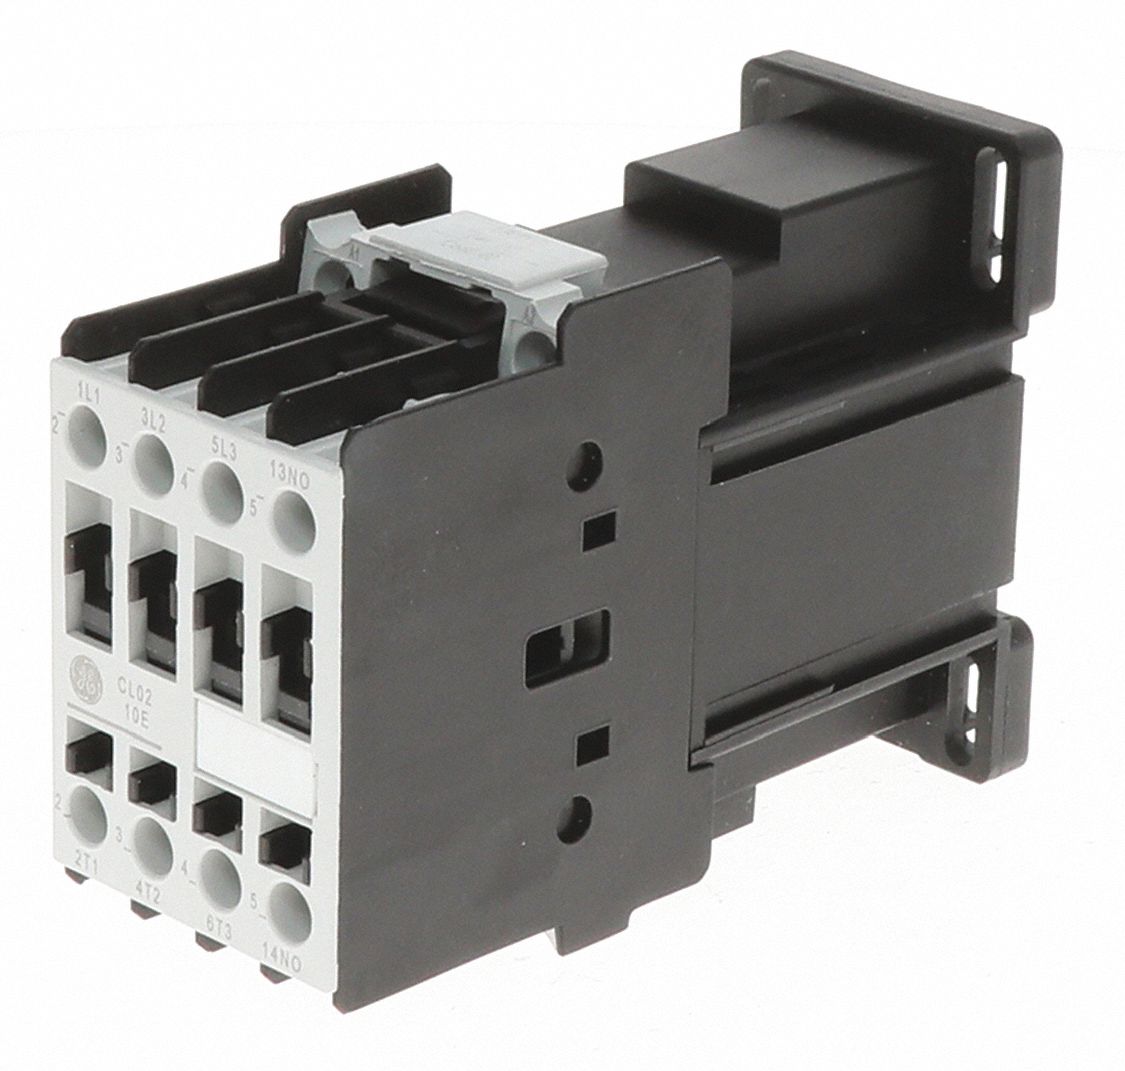 IEC Magnetic Contactor: 24 V DC Coil Volts, 32 A Full Load Amps-Inductive, 1NO